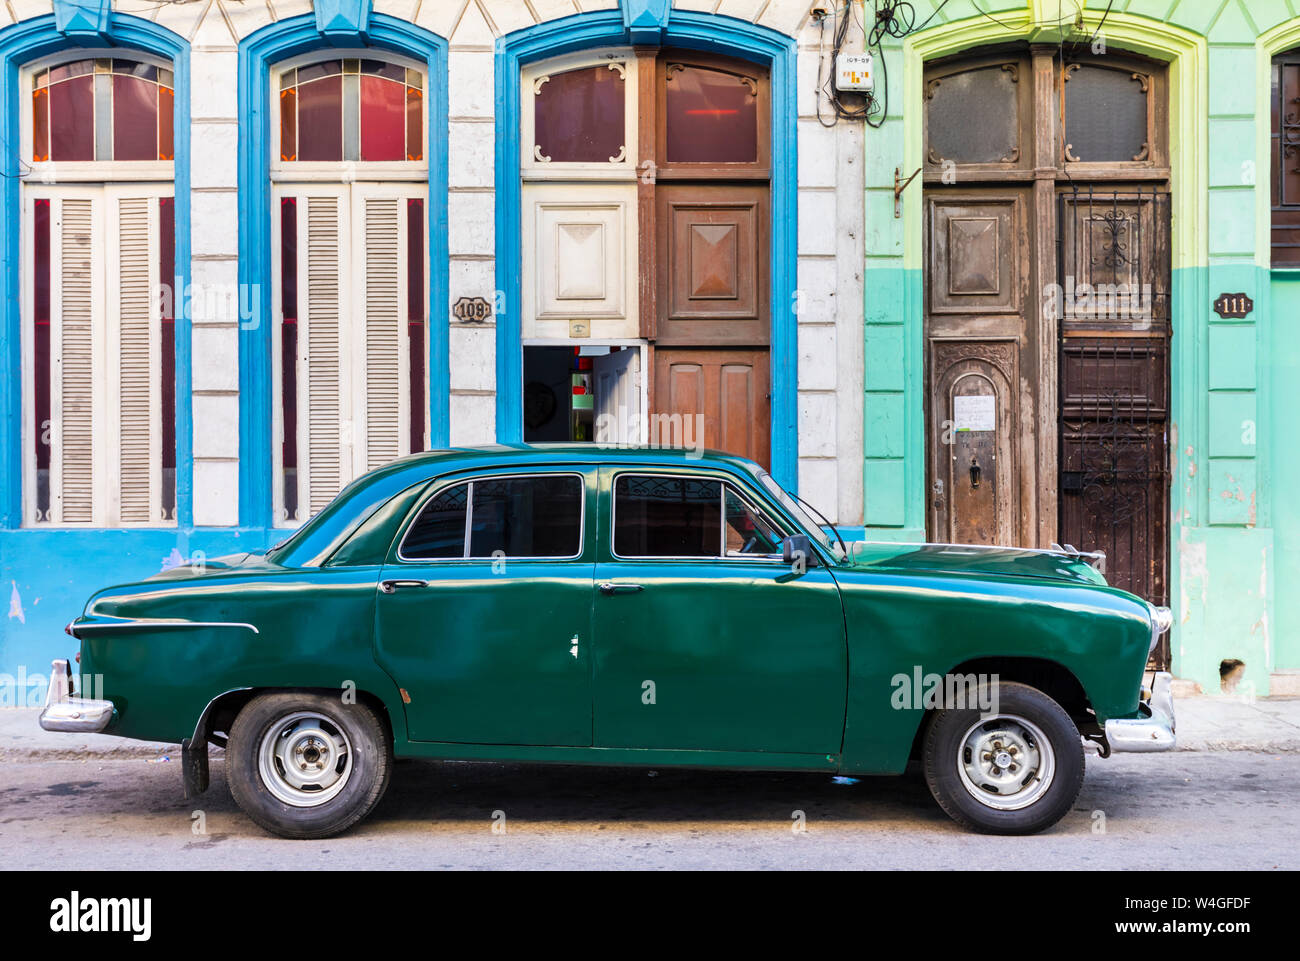 Green vintage voiture garée en face de l'entrée de la chambre, La Havane, Cuba Banque D'Images